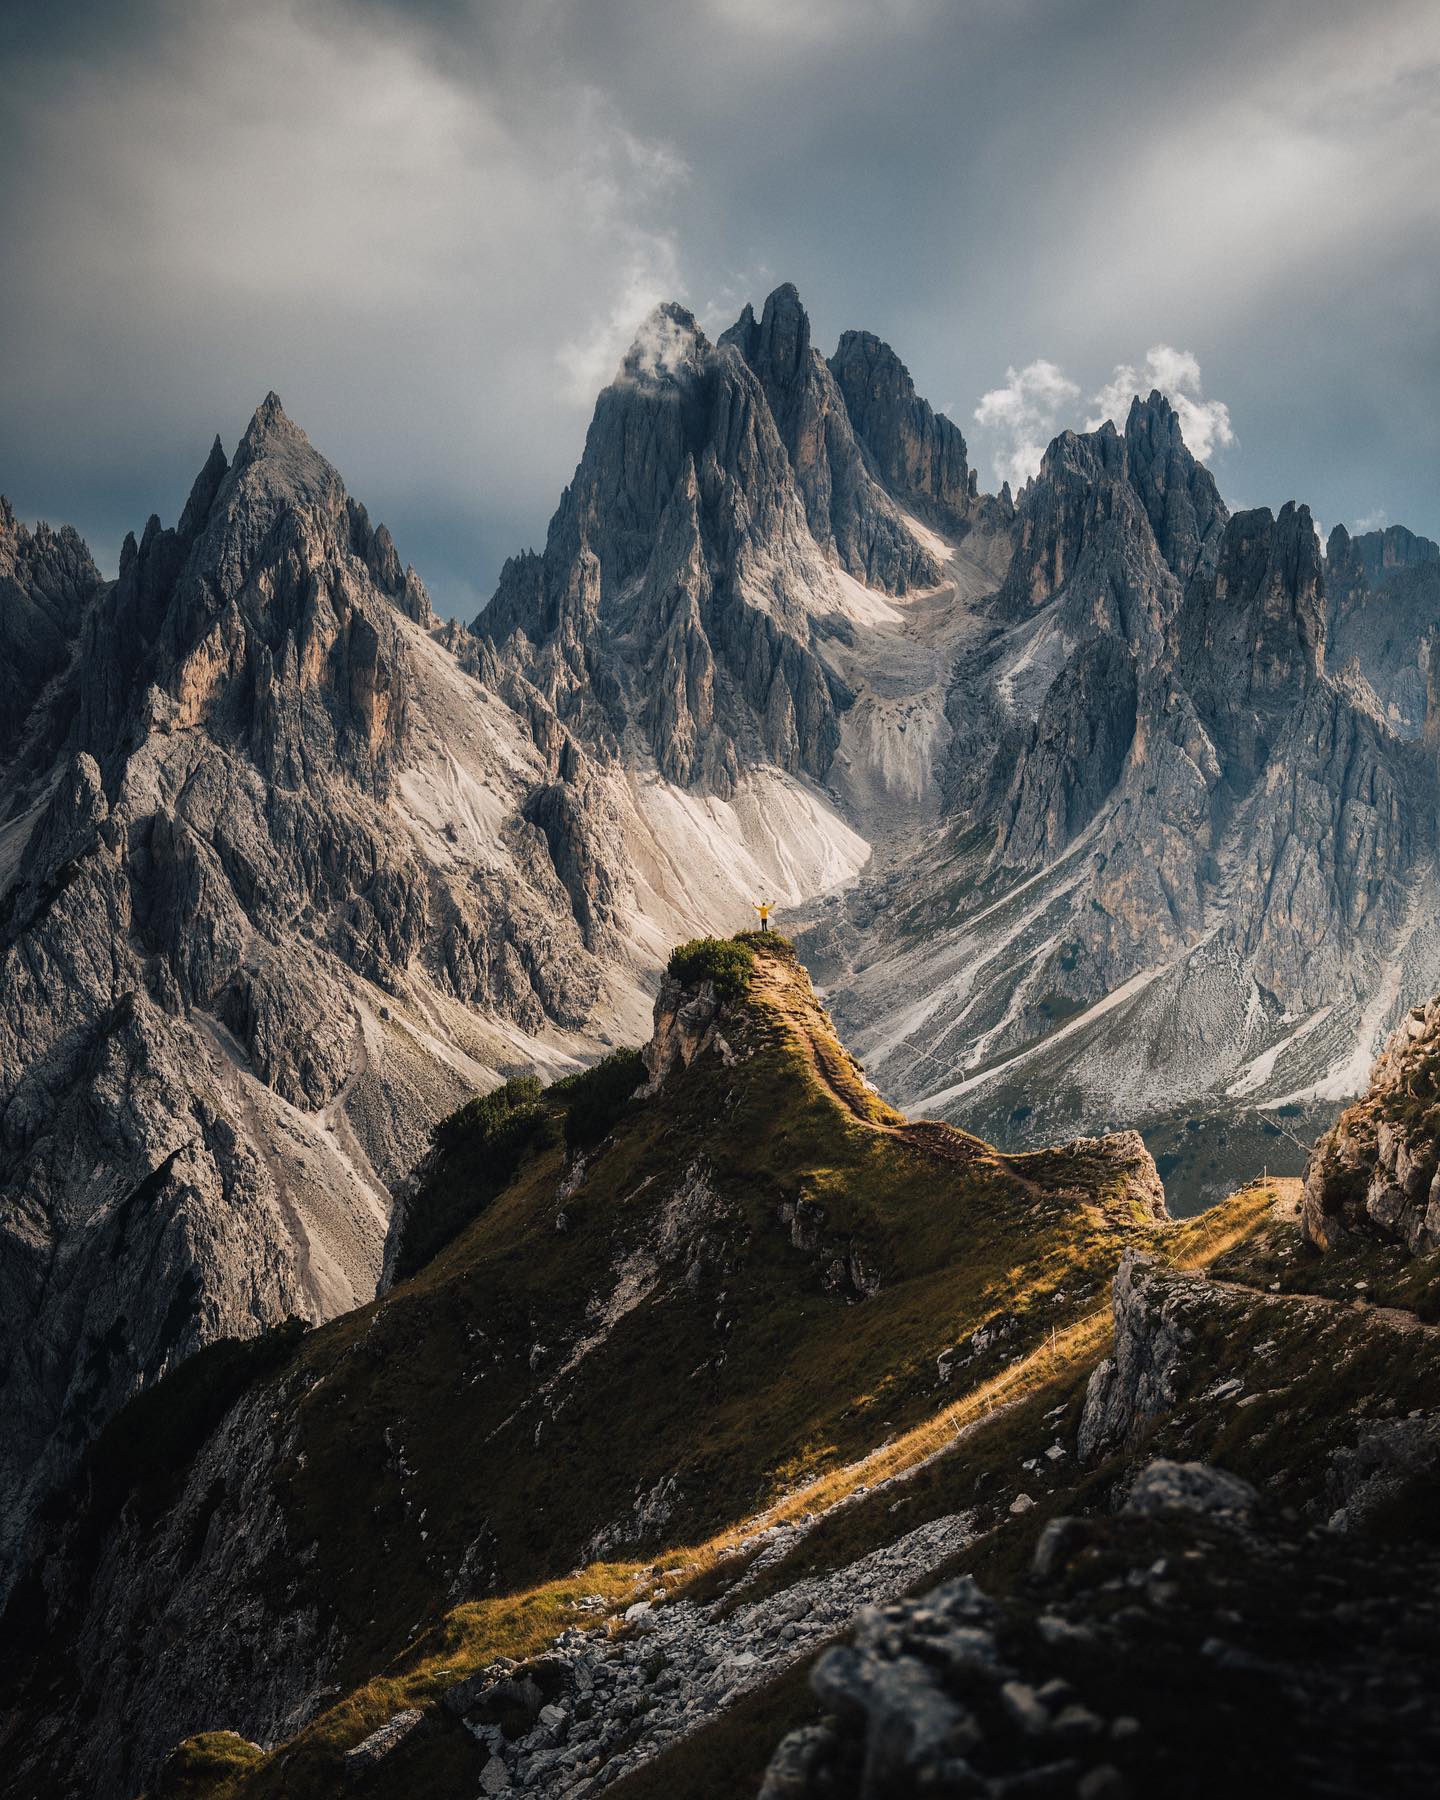 Dolomites UNESCO World Heritage Site, Italy